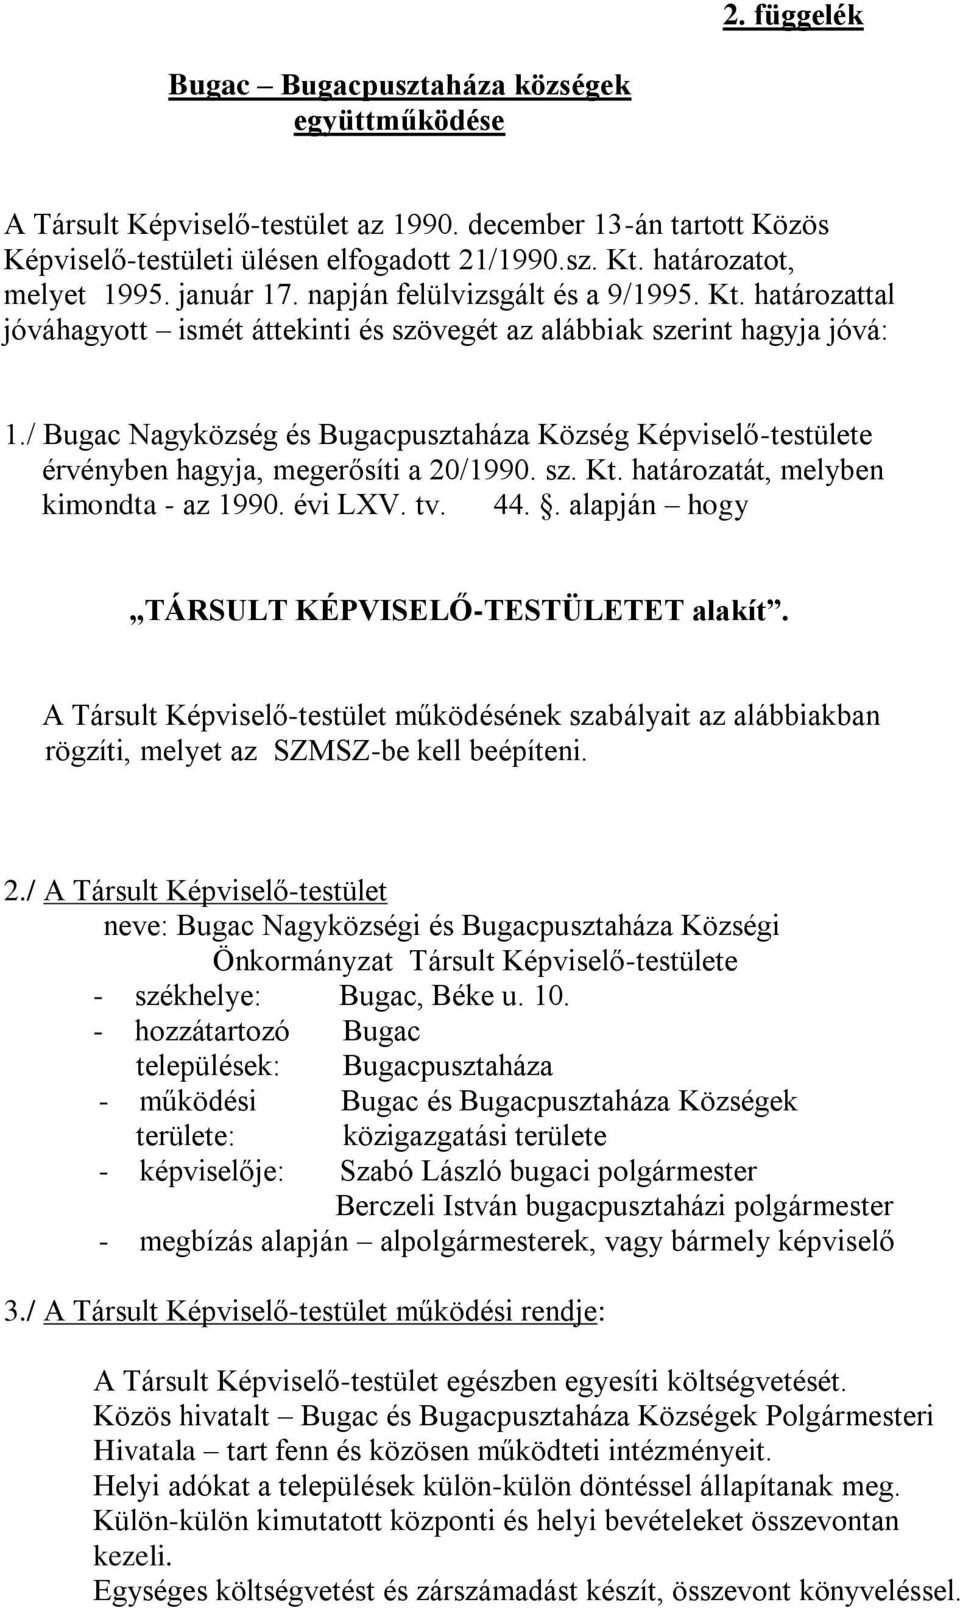 / Bugac Nagyközség és Bugacpusztaháza Község Képviselő-testülete érvényben hagyja, megerősíti a 20/1990. sz. Kt. határozatát, melyben kimondta - az 1990. évi LXV. tv. 44.